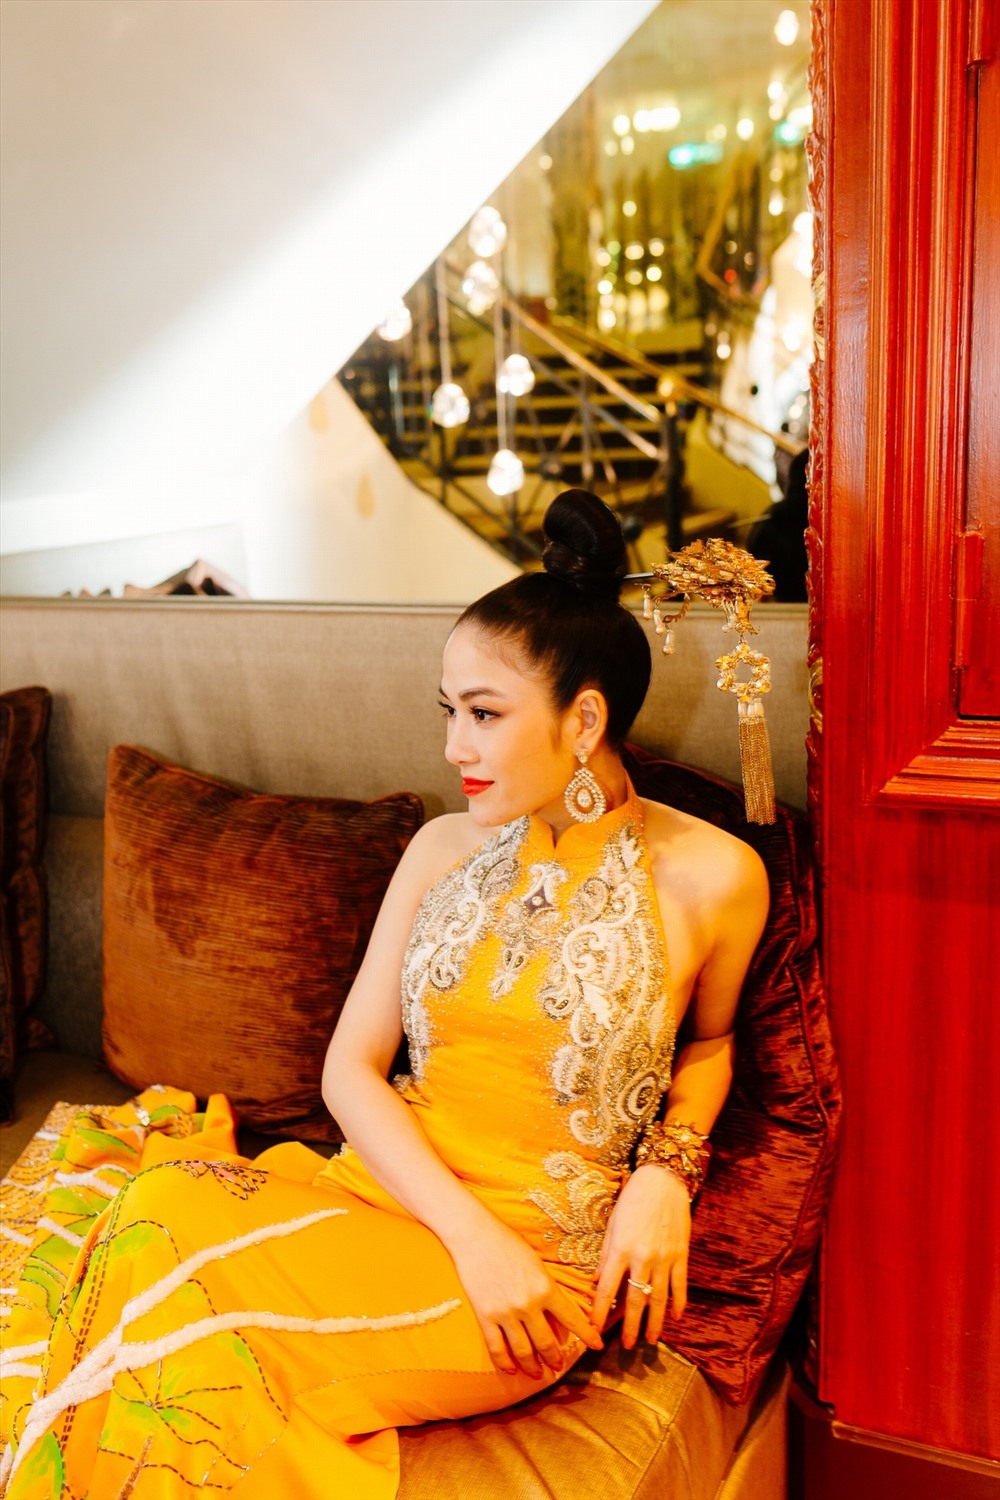 Người đẹp mong muốn giới thiệu nét văn hóa, truyền thống Việt Nam thông qua tà áo dài cách điệu.